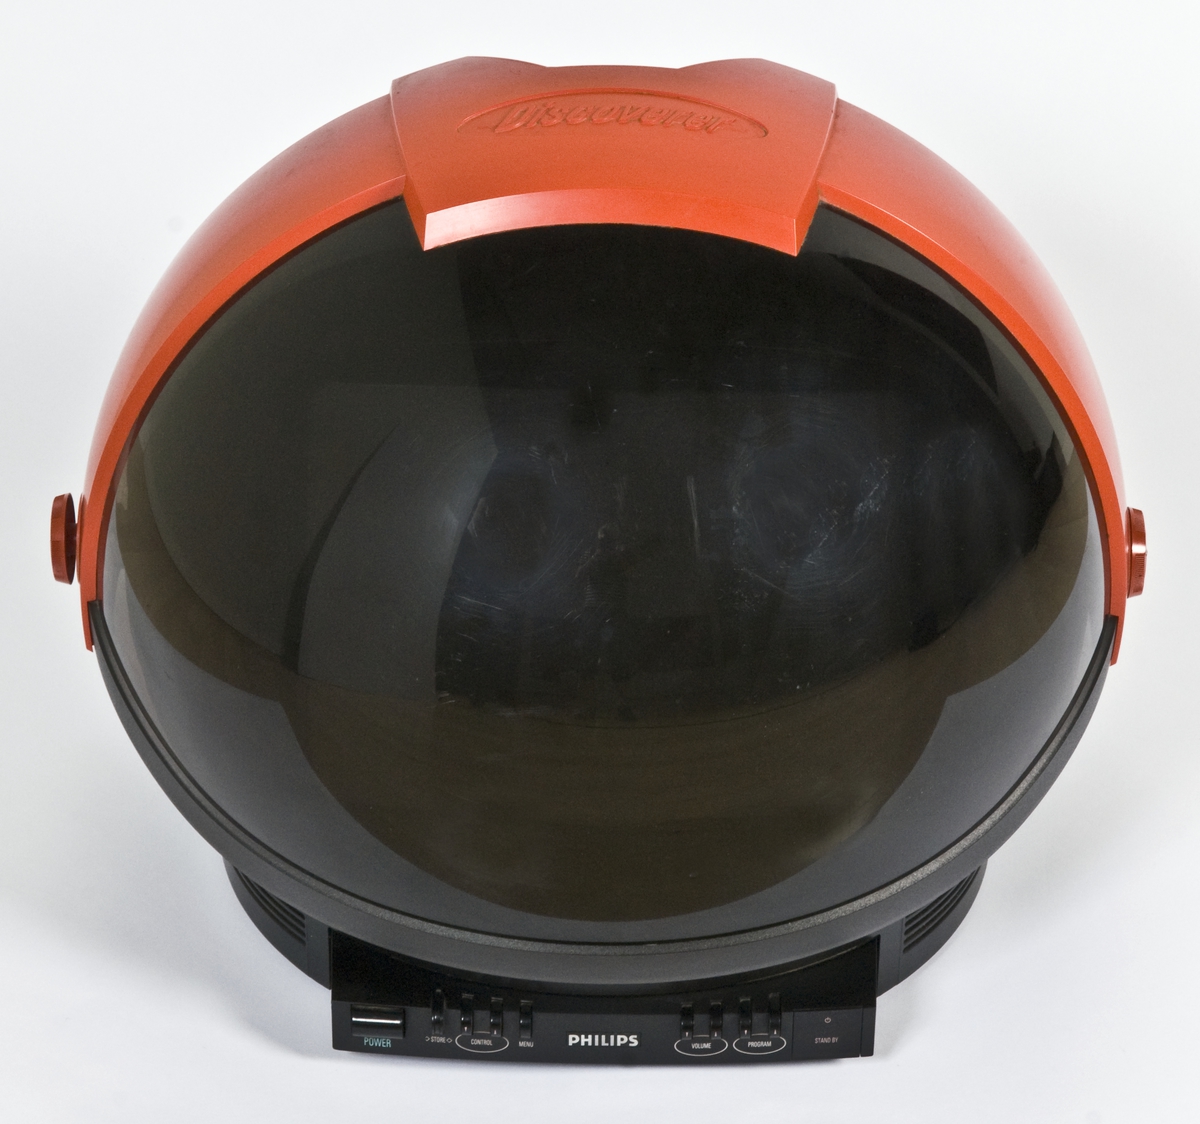 Tv-apparat utformet som en astronaut-hjelm med hjul bak og vippbart visir i gjennomsiktig mørk plast. Fjernkontroll med skyvedeksel følger med.